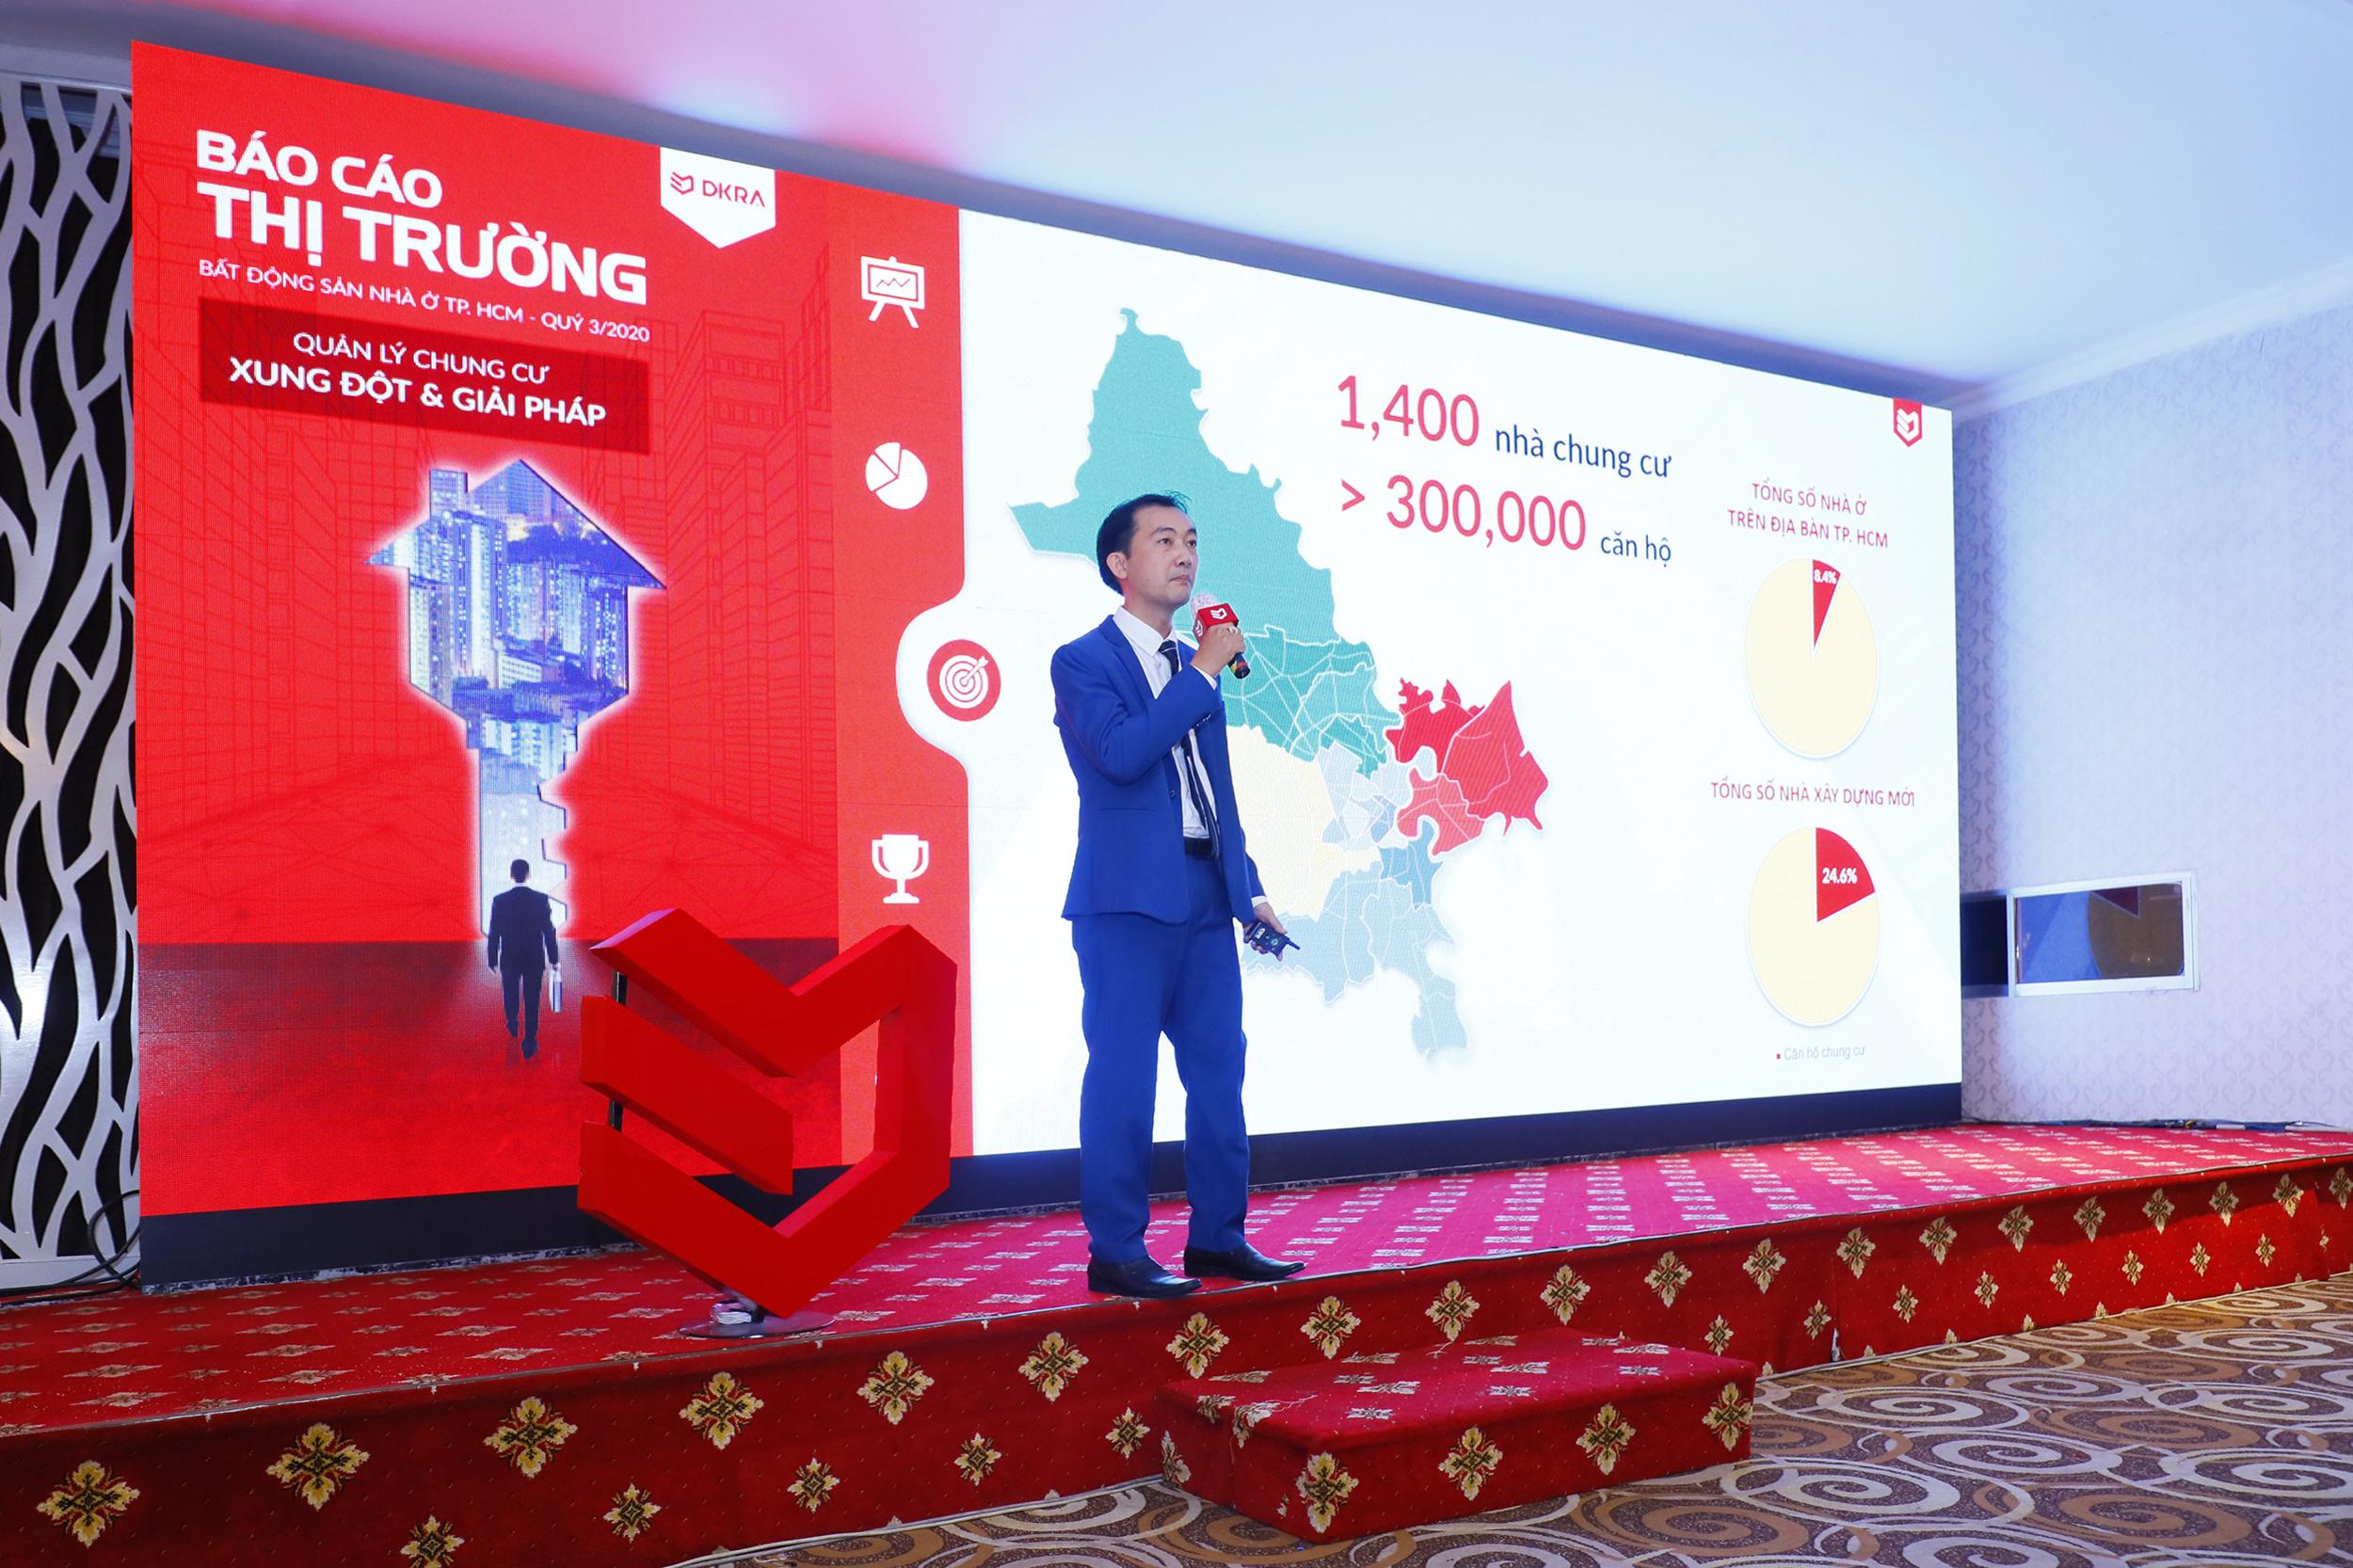 Ông Vũ Tiến Thành - CEO DKRA Property Management, thành viên DKRA Vietnam trình bày nội dung chủ đề “Quản lý chung cư - Xung đột & Giải pháp”.